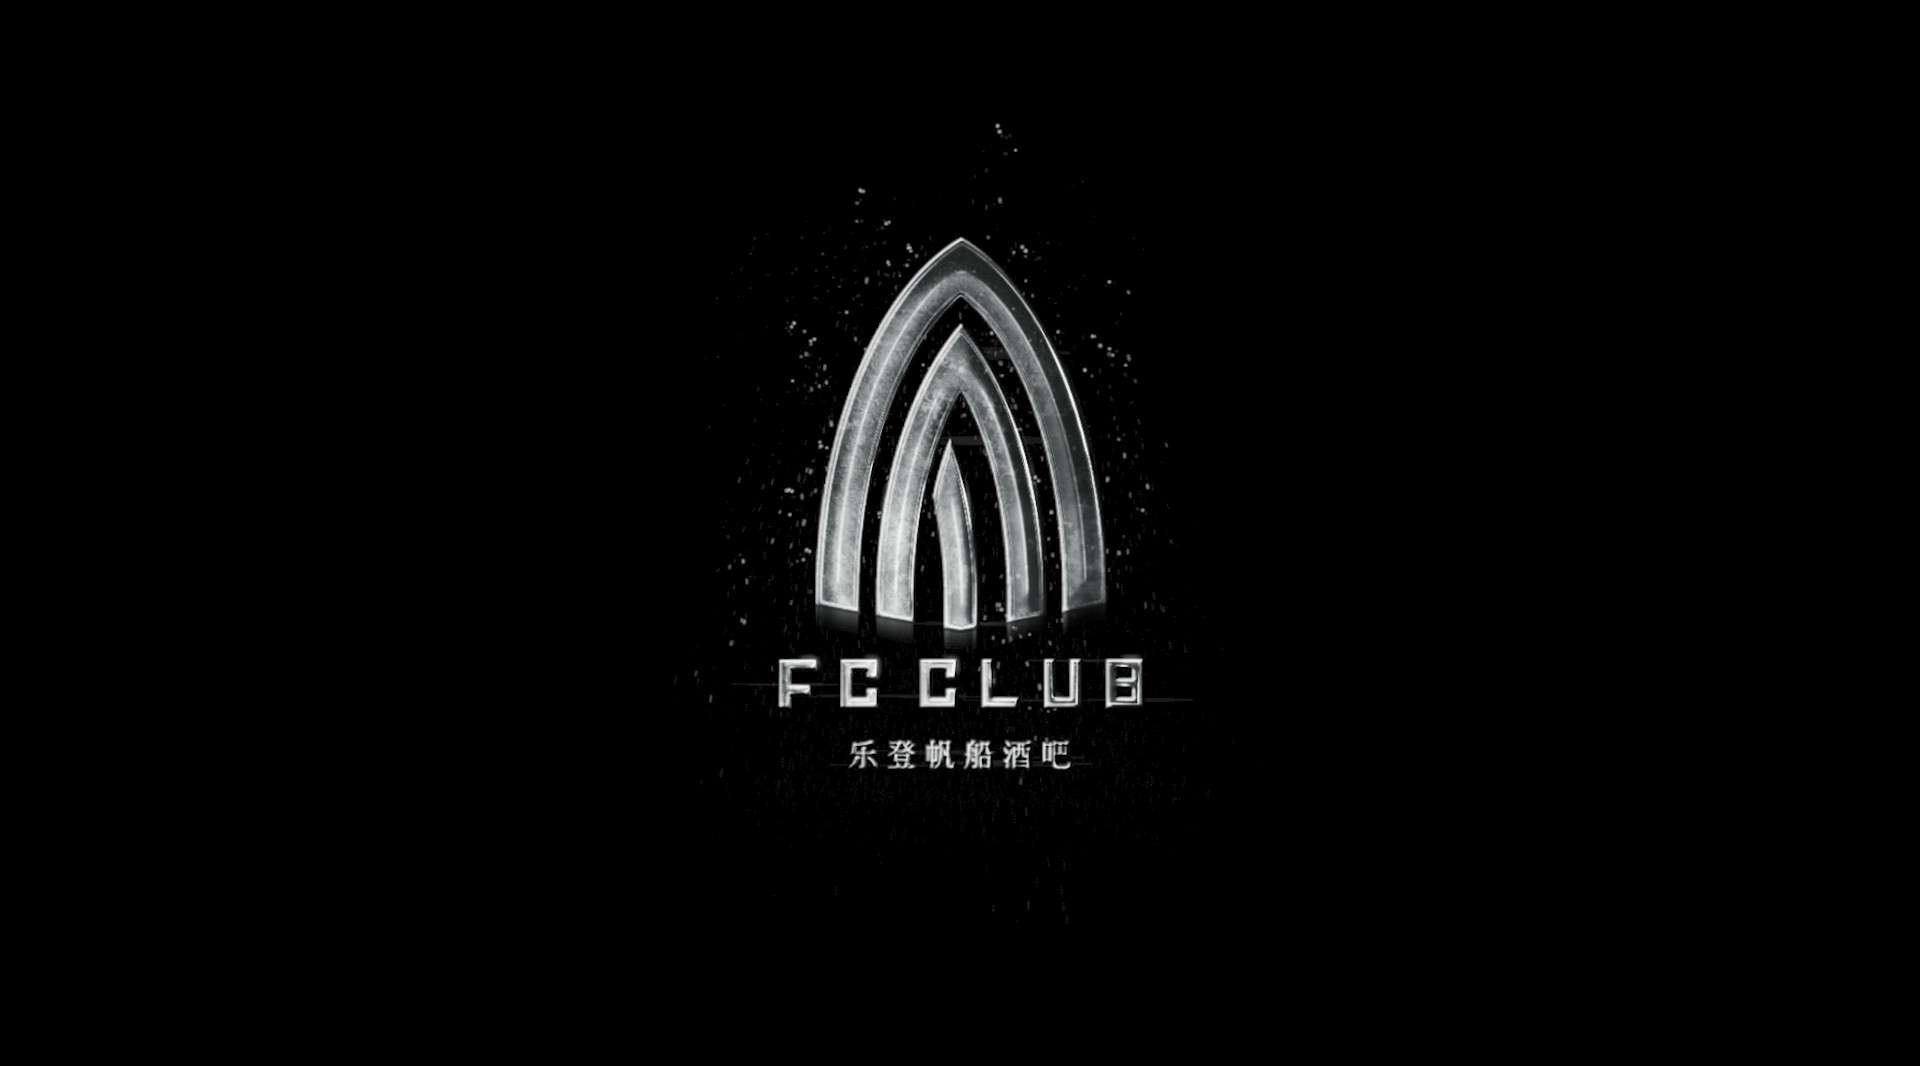 佛山FC CLUB 概念宣传片